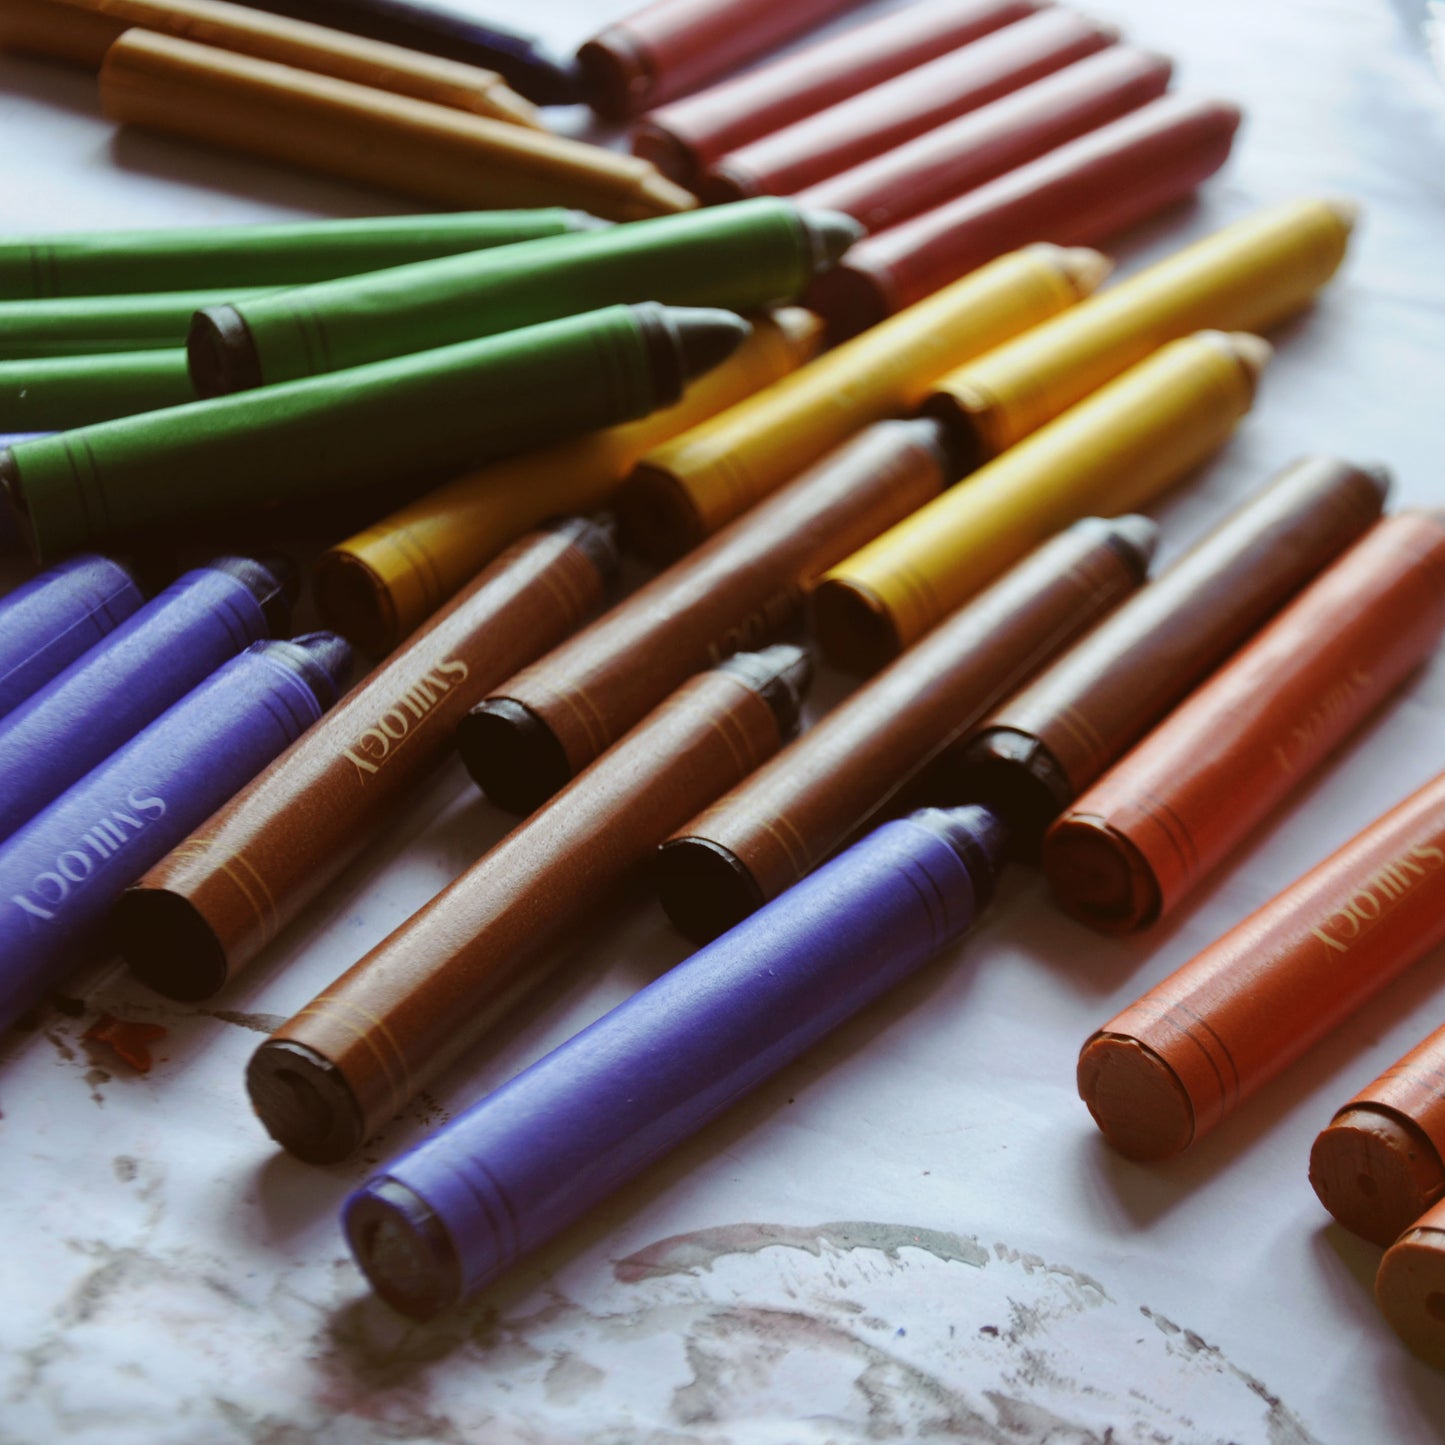 5-Piece Textured Organic Beeswax Ocean Rock Crayons – Smilogy Organic  Beeswax Crayons